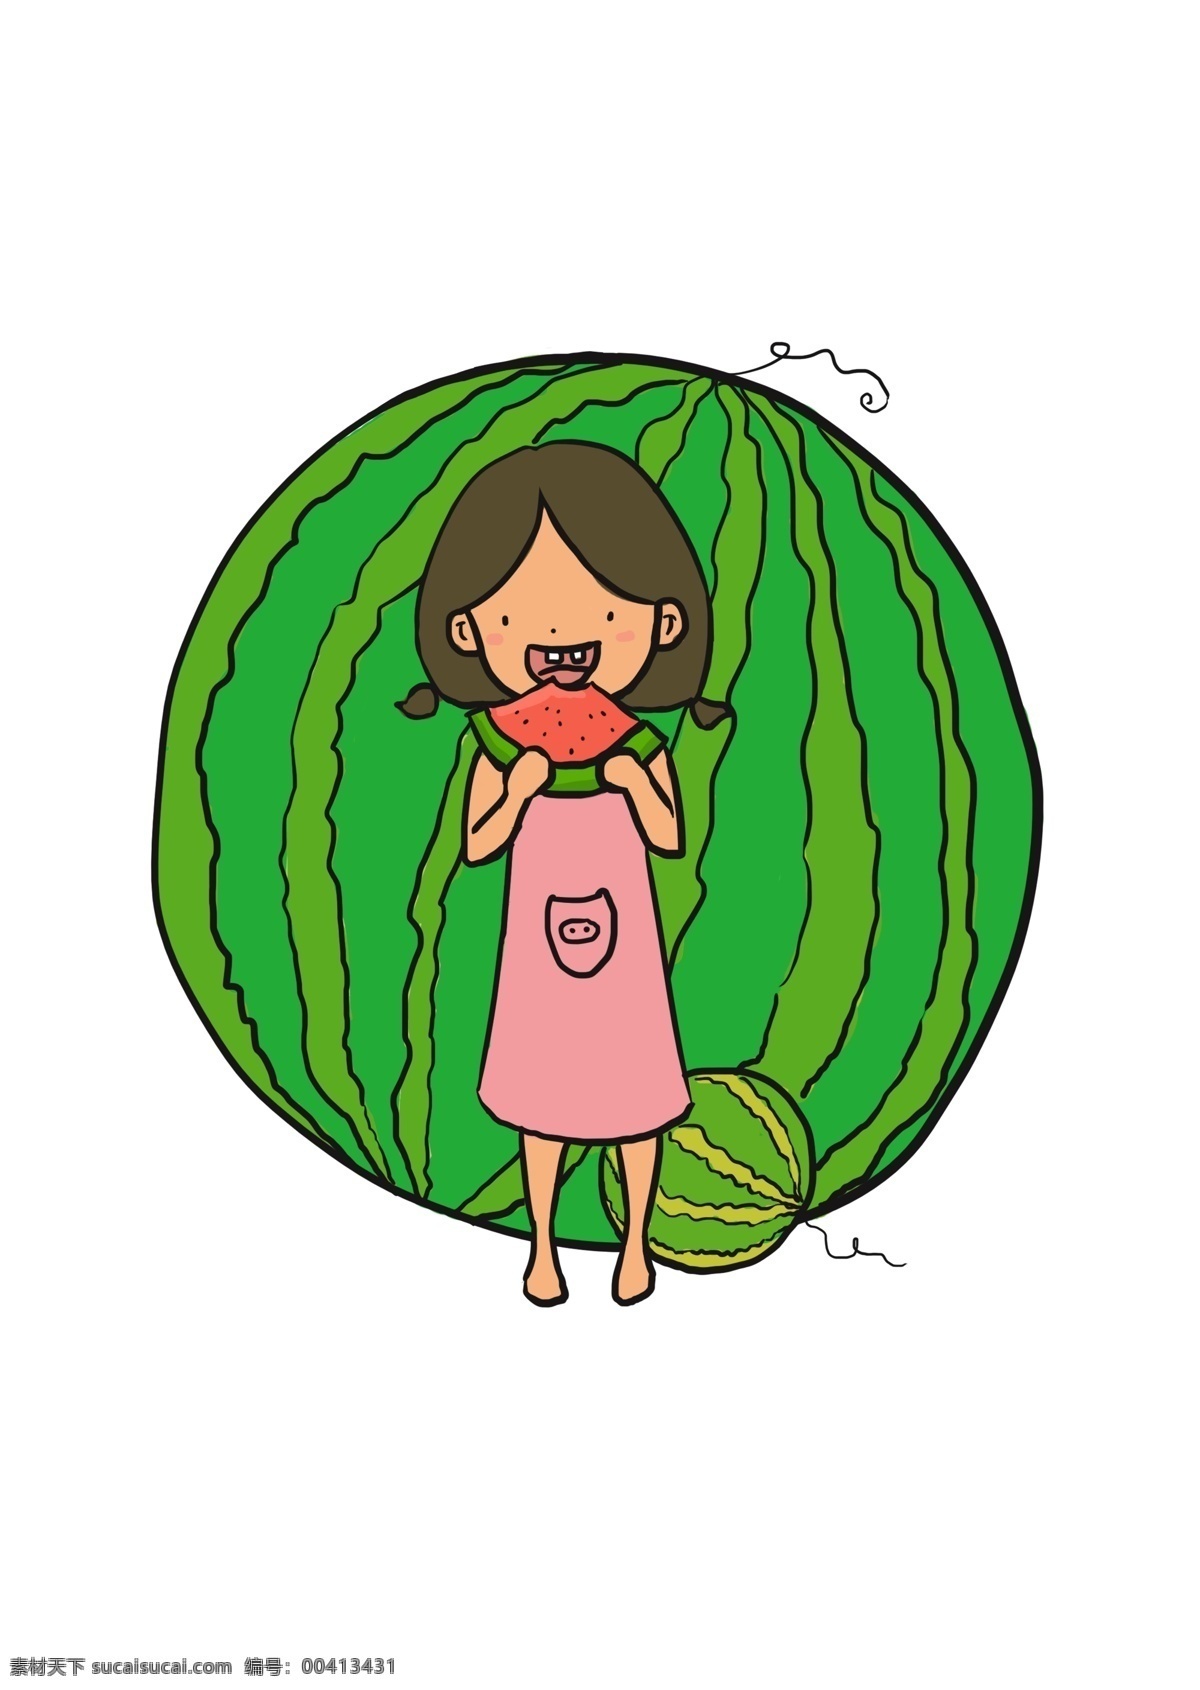 小女孩 站 大 西瓜 前面 吃 吃西瓜 夸张风大西瓜 清凉 夏季 小女孩吃西瓜 卡通手绘